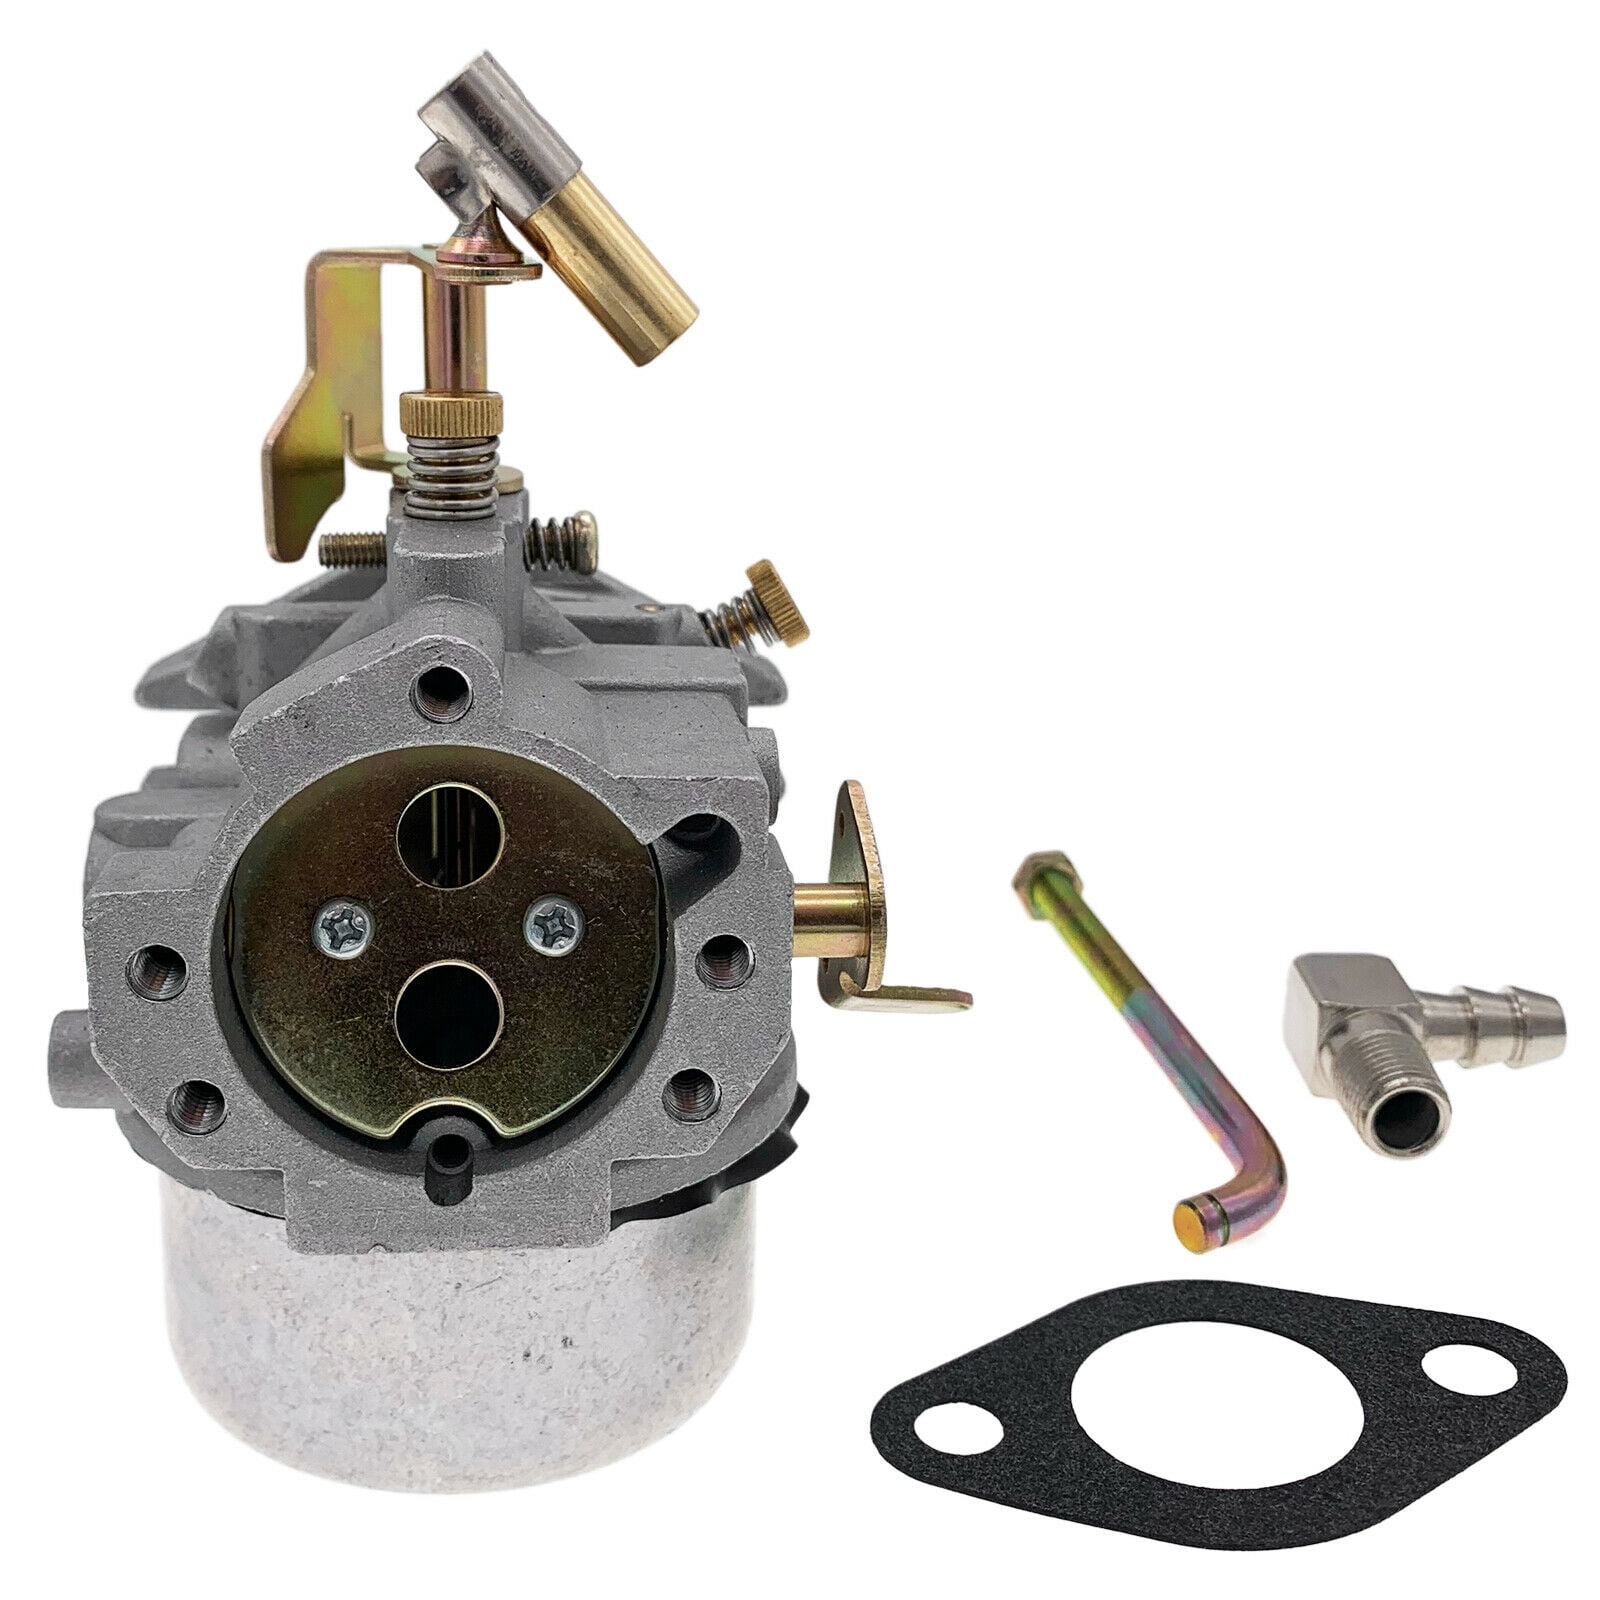 Details about   Carburetor Fits for Kohler K341 K321 14 HP 16 HP Engine Carb Replace #316 Carb 